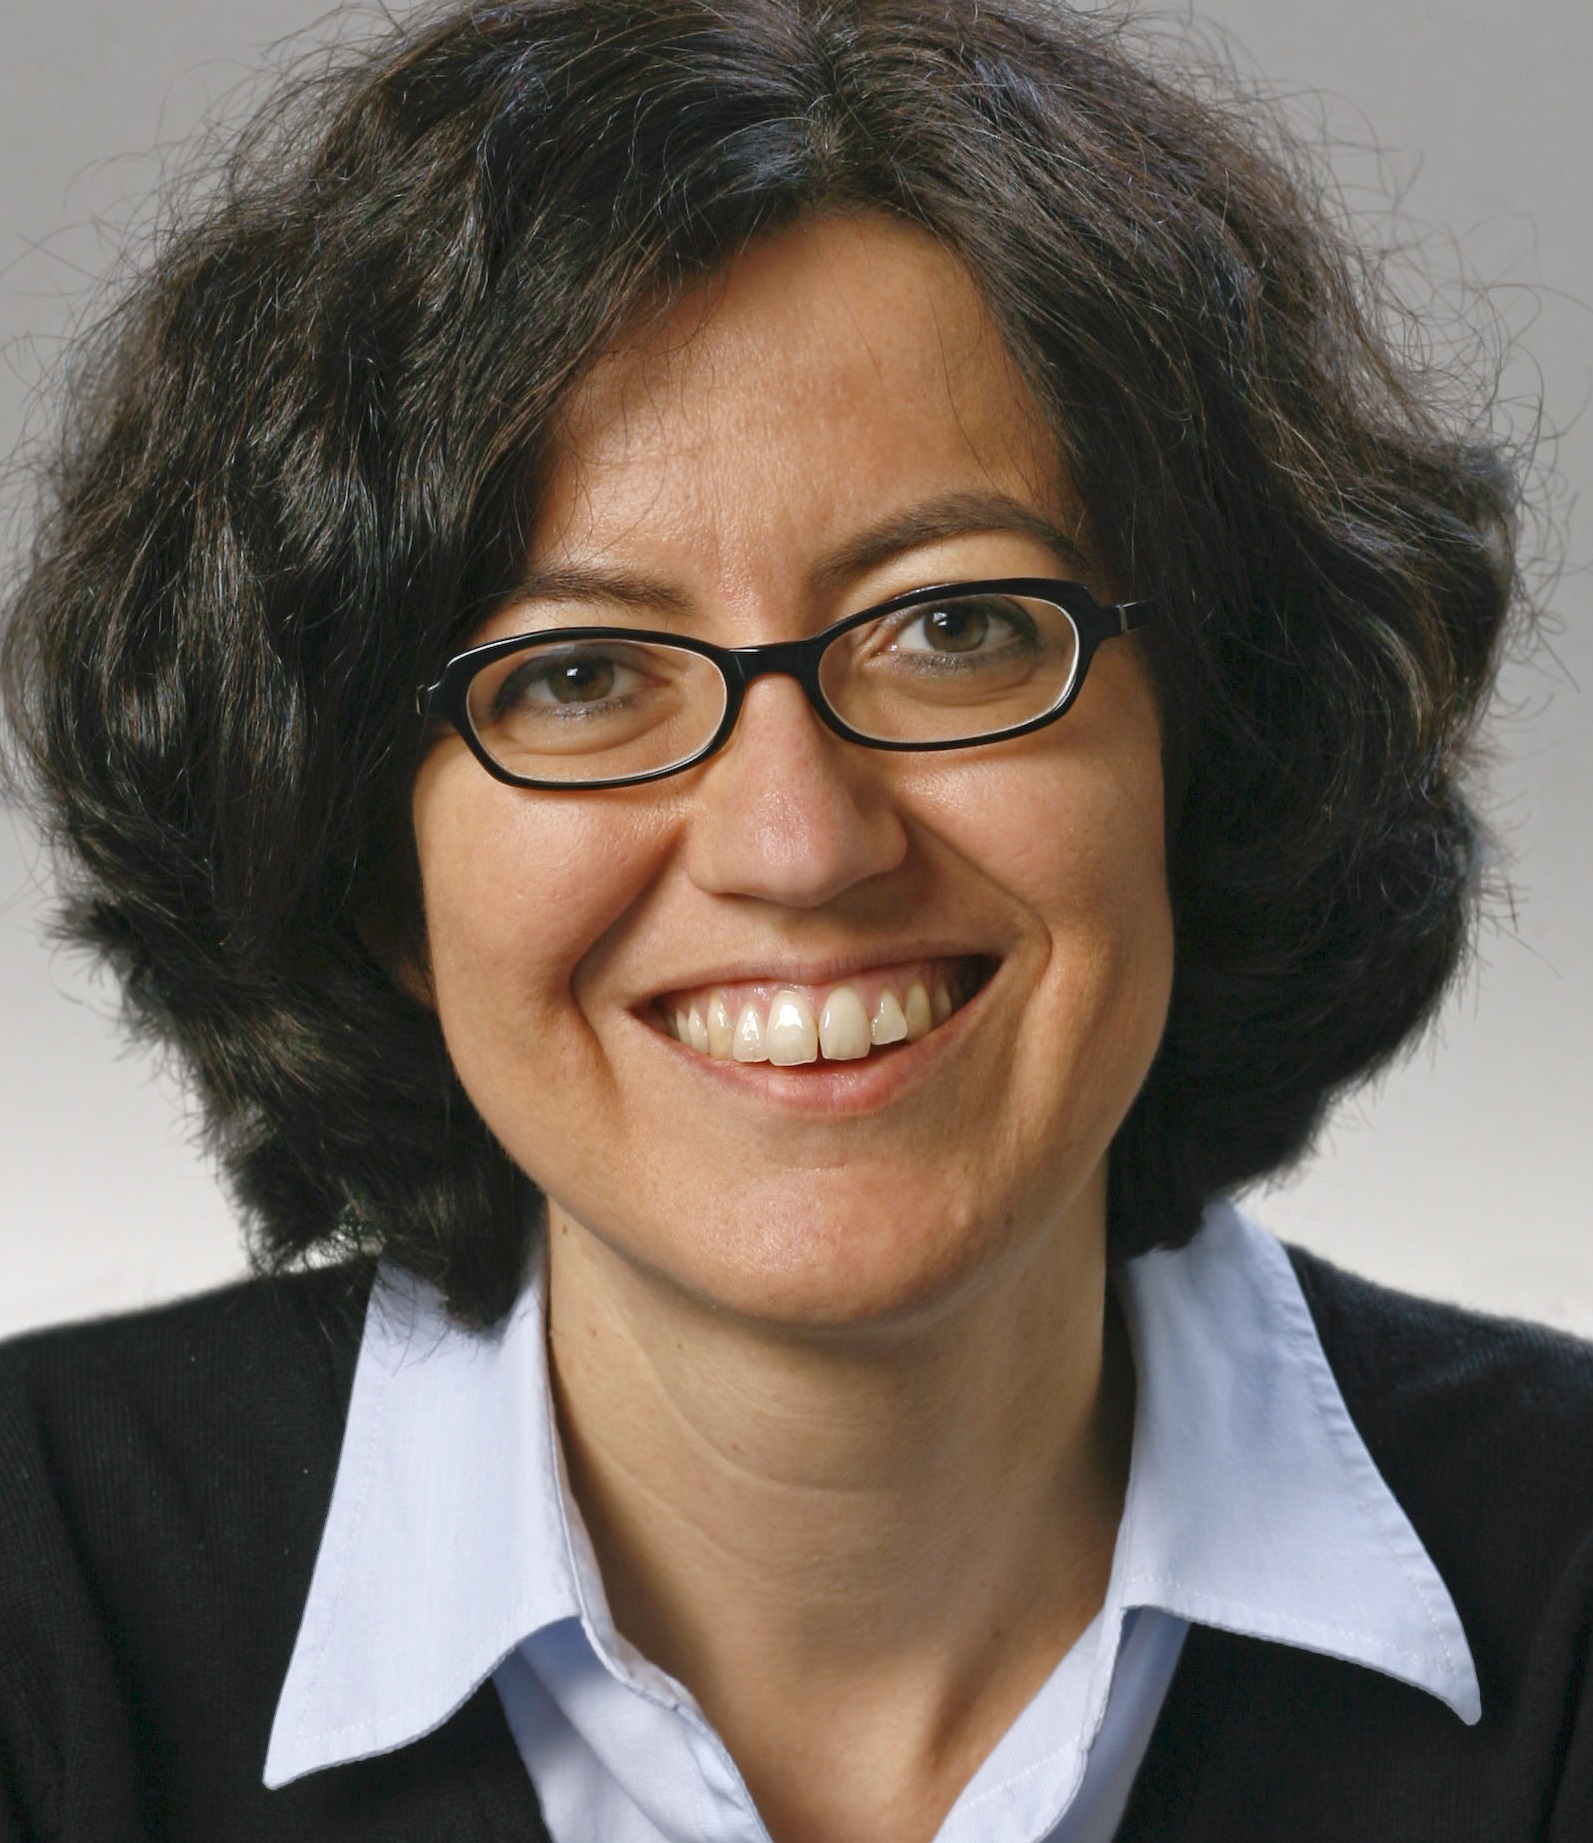 PD Dr. Ulrike Schleicher